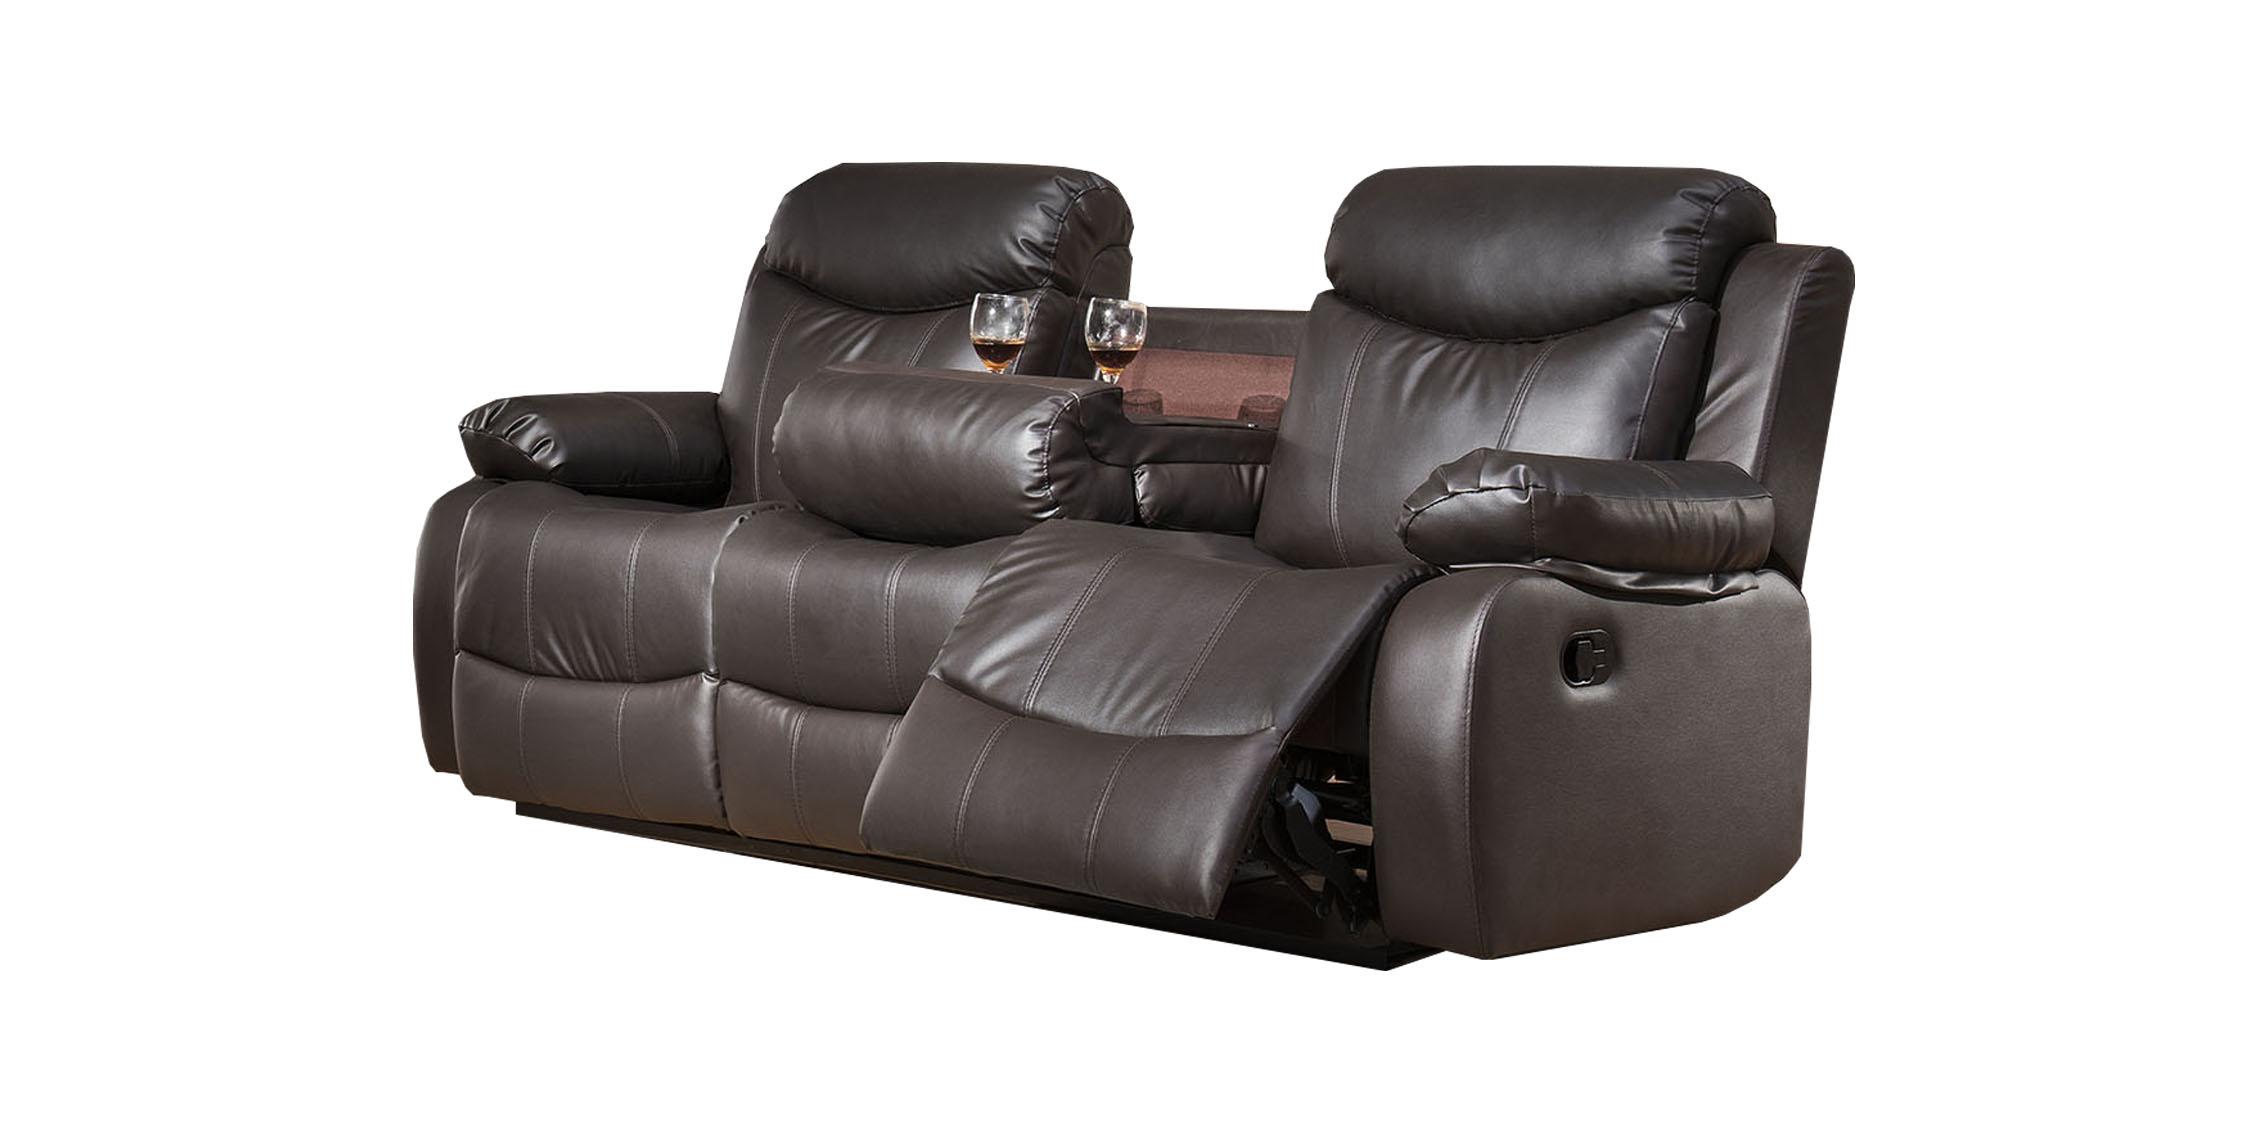 McFerran Furniture SF3558-S Recliner Sofa